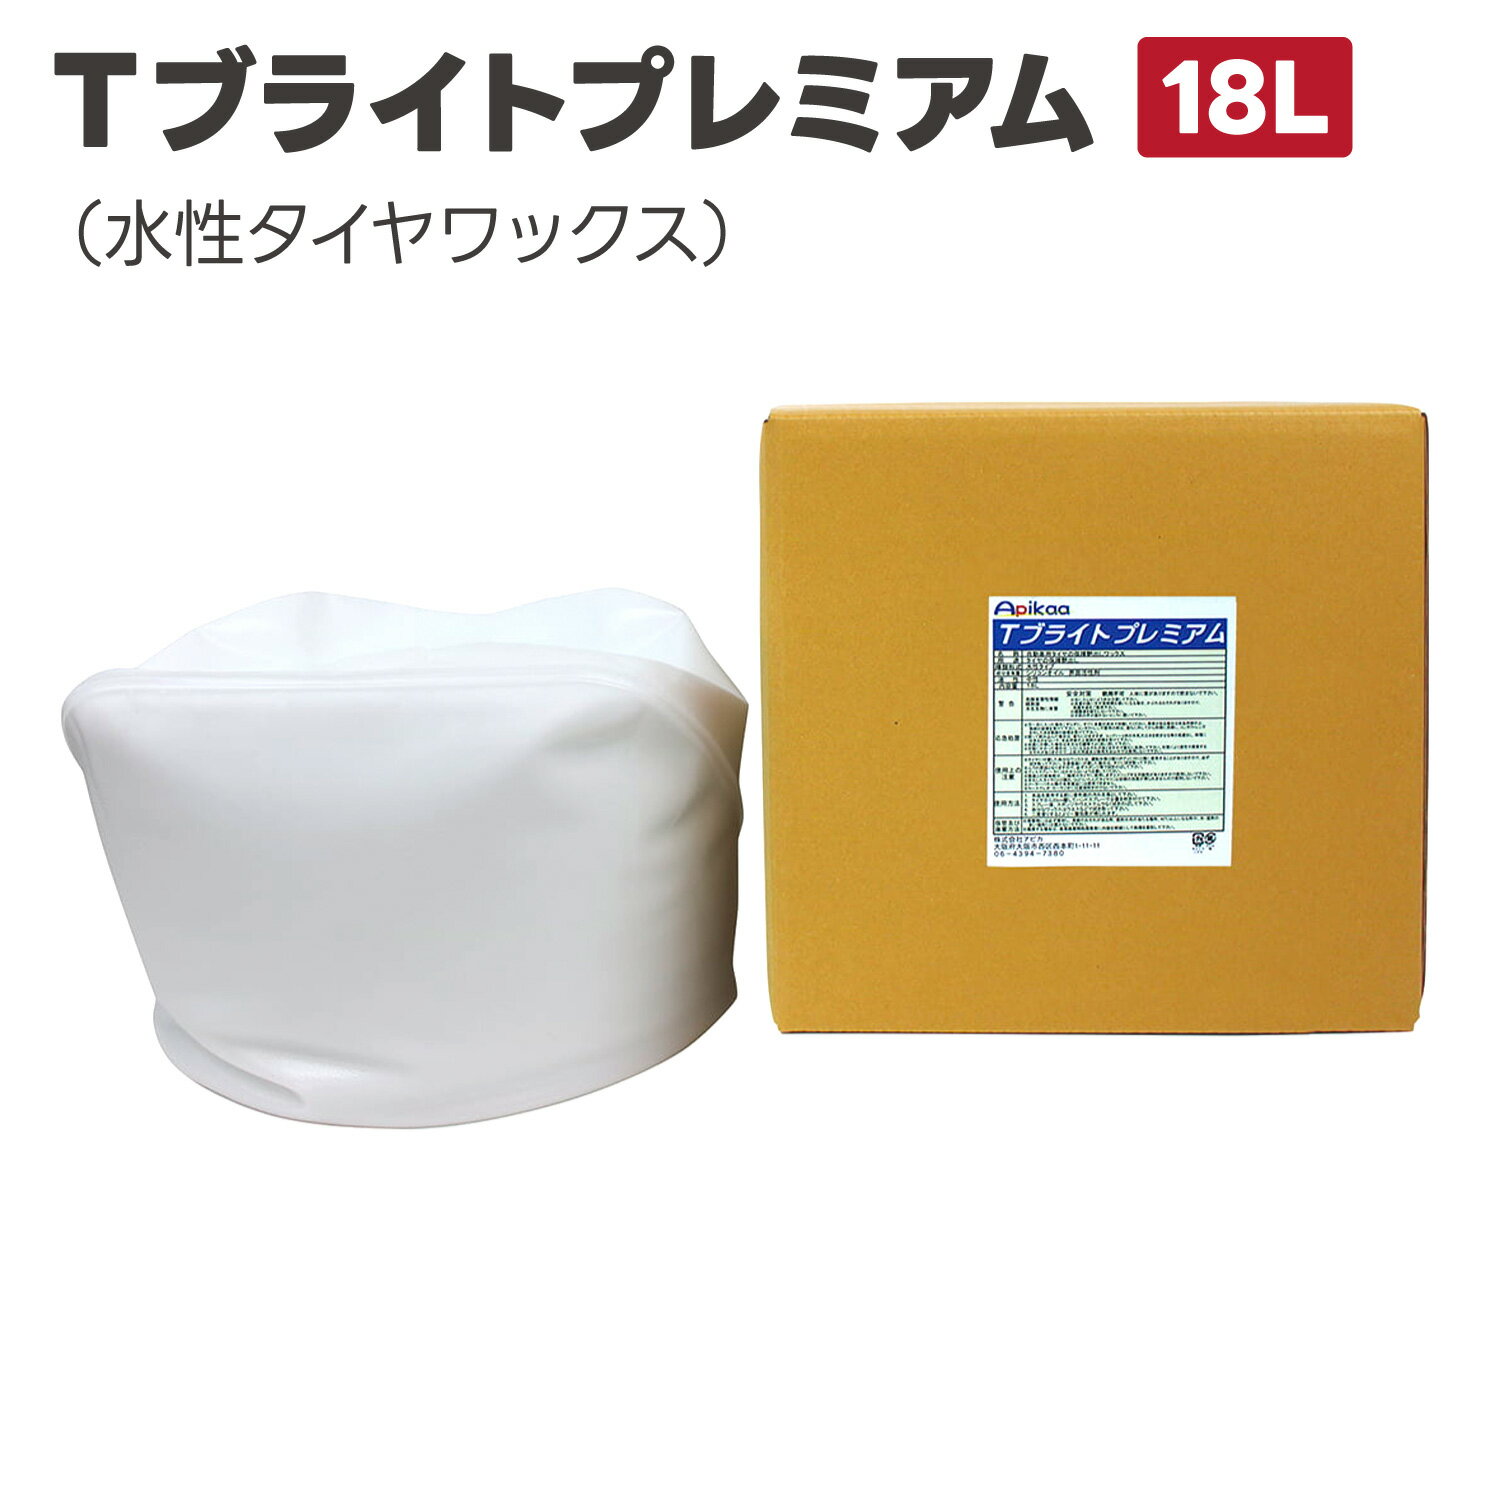 【高品質・水性タイヤワックス・タイヤ保護】Tブライトプレミアム 18L